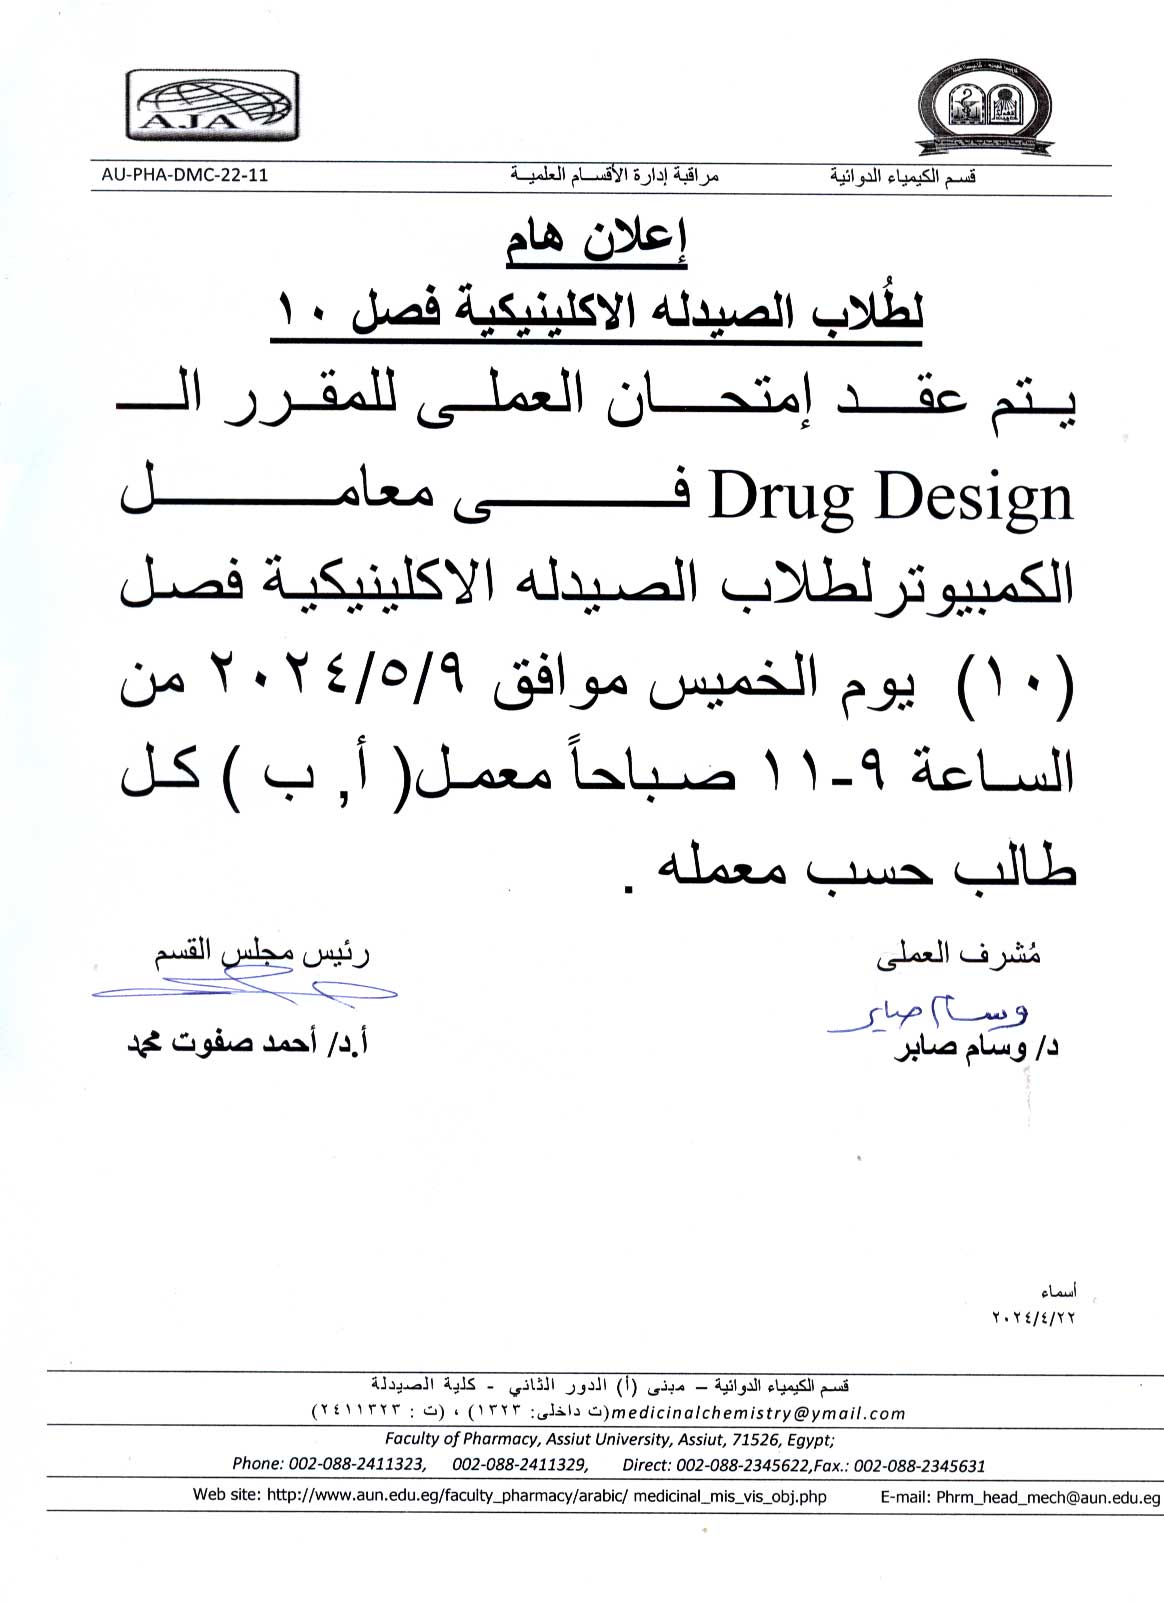 اعلان لطلاب برنامج الصيدلة الاكلينيكية (فصل 10) سوف يتم عقد أمتحان العملي  لمقرر Drug Design